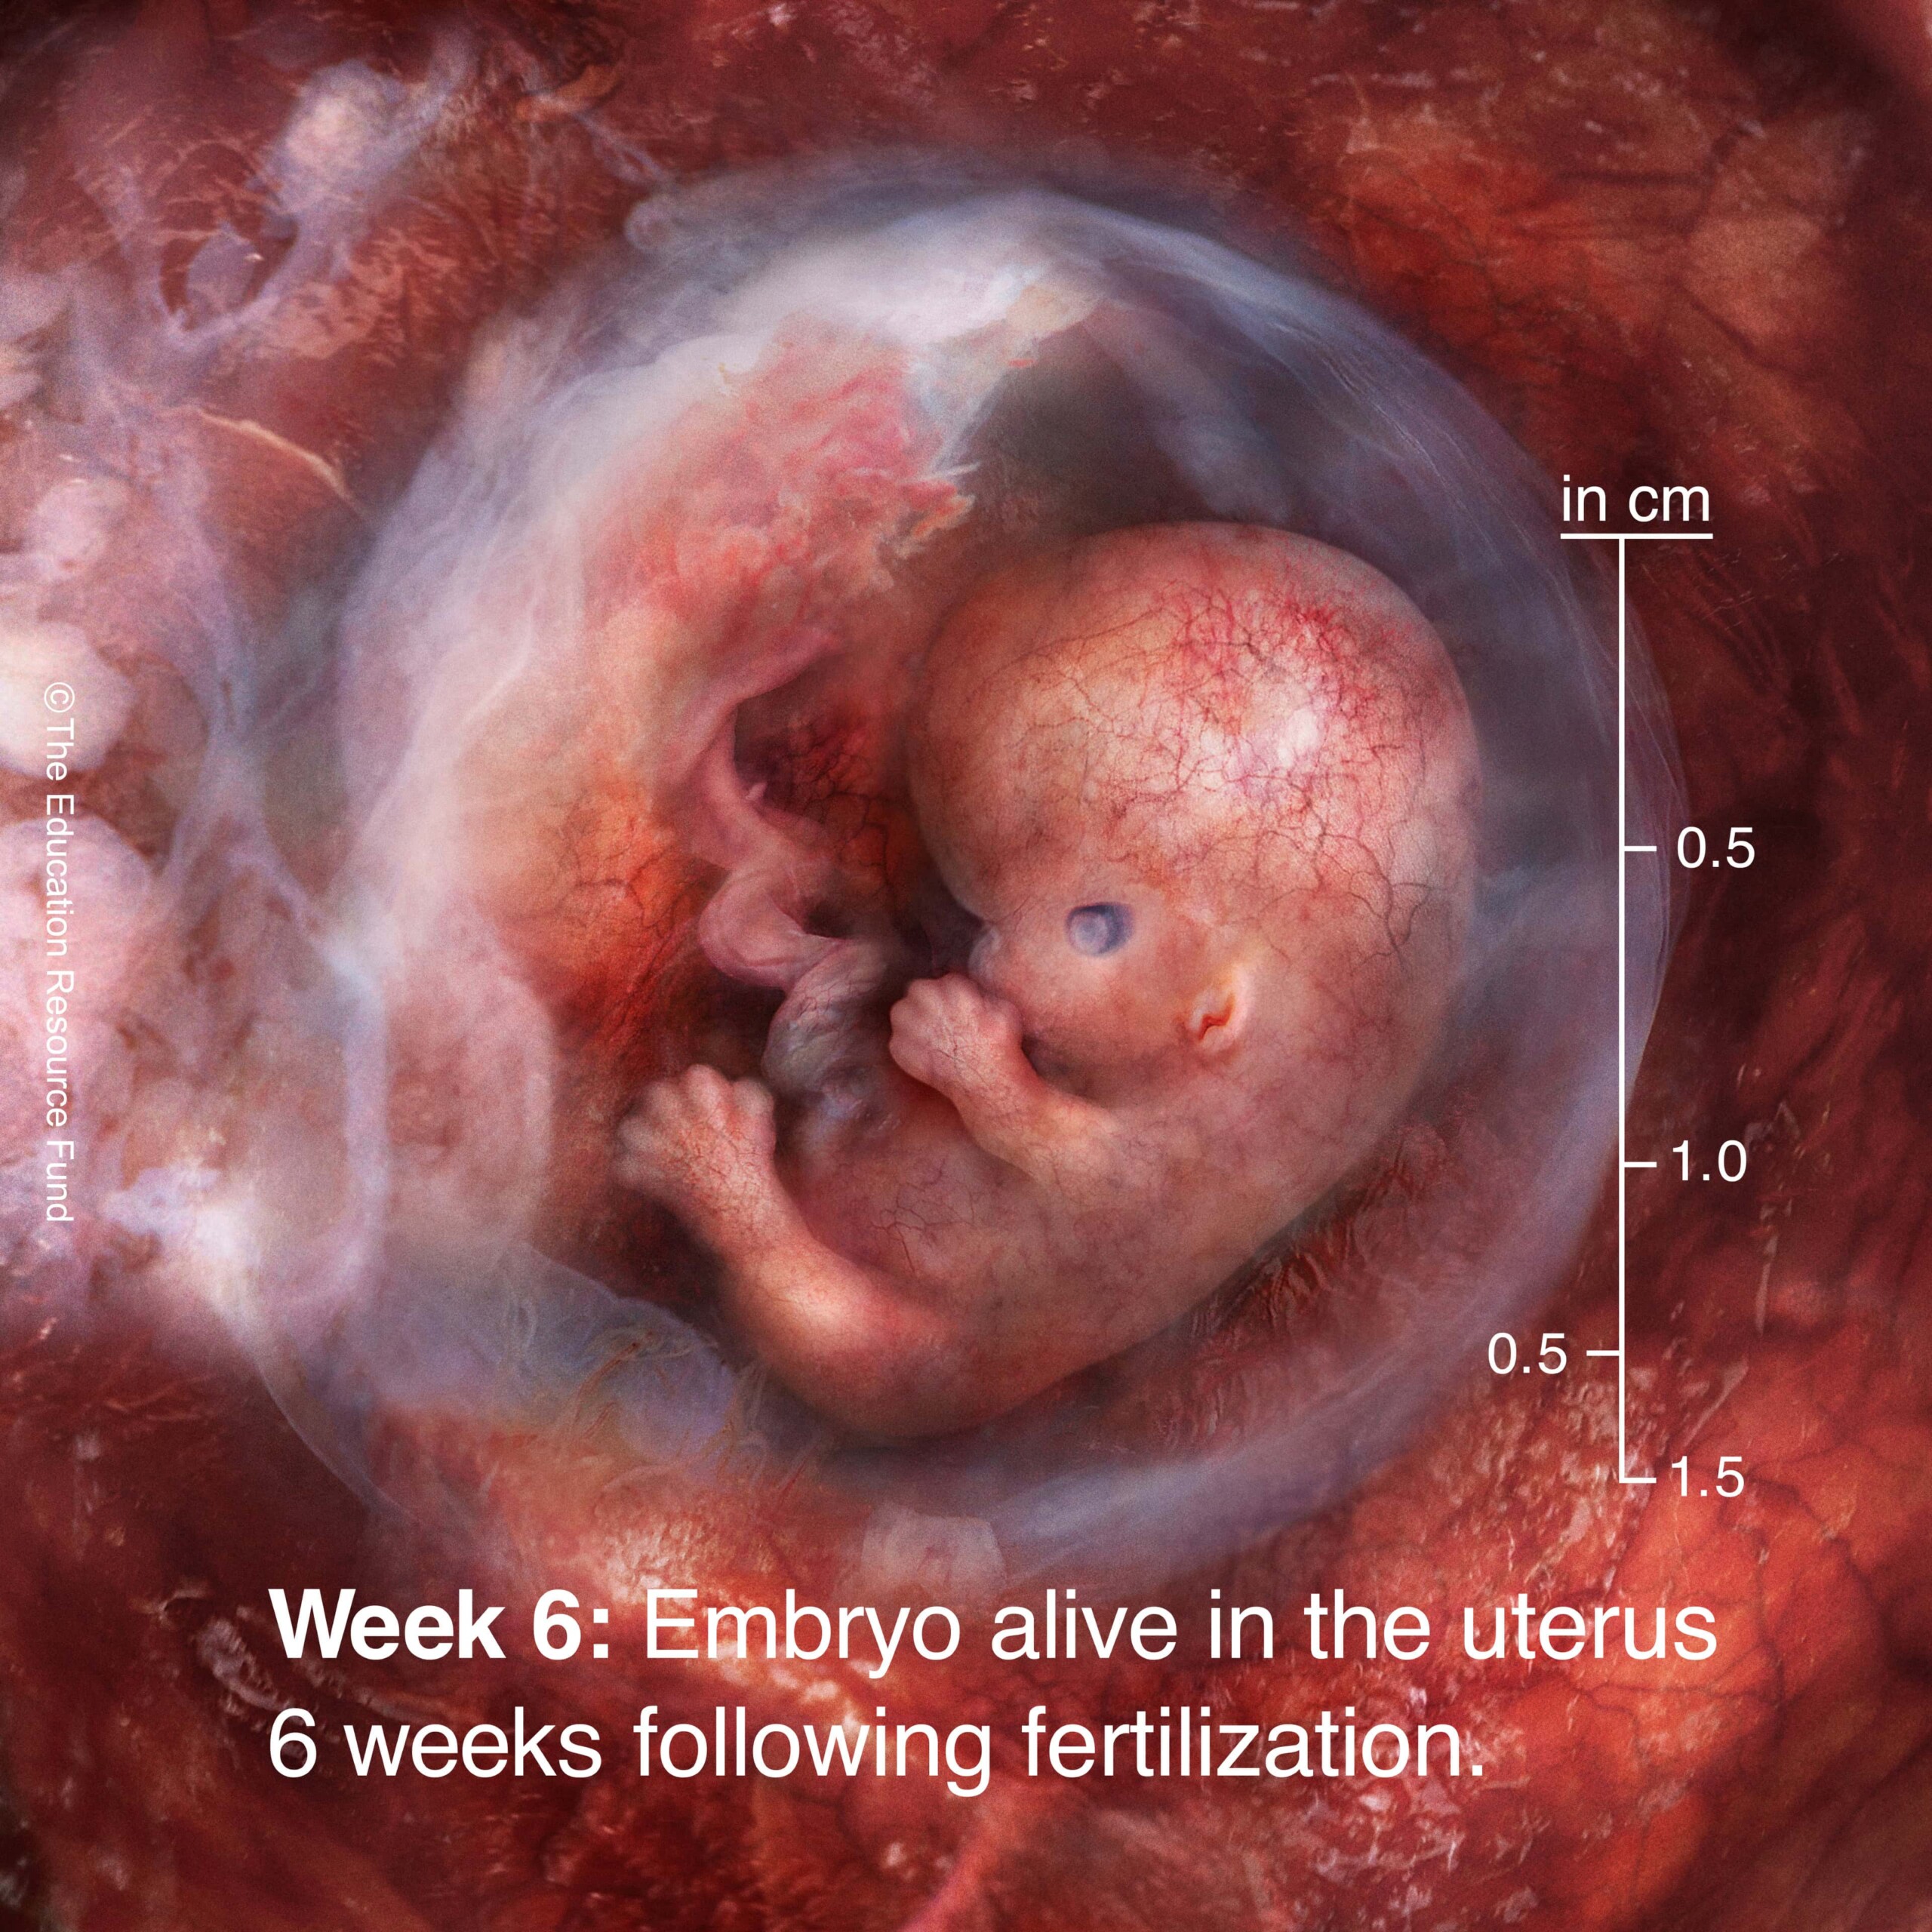 Week 6: Embryo alive in the uterus 6 weeks following fertilization